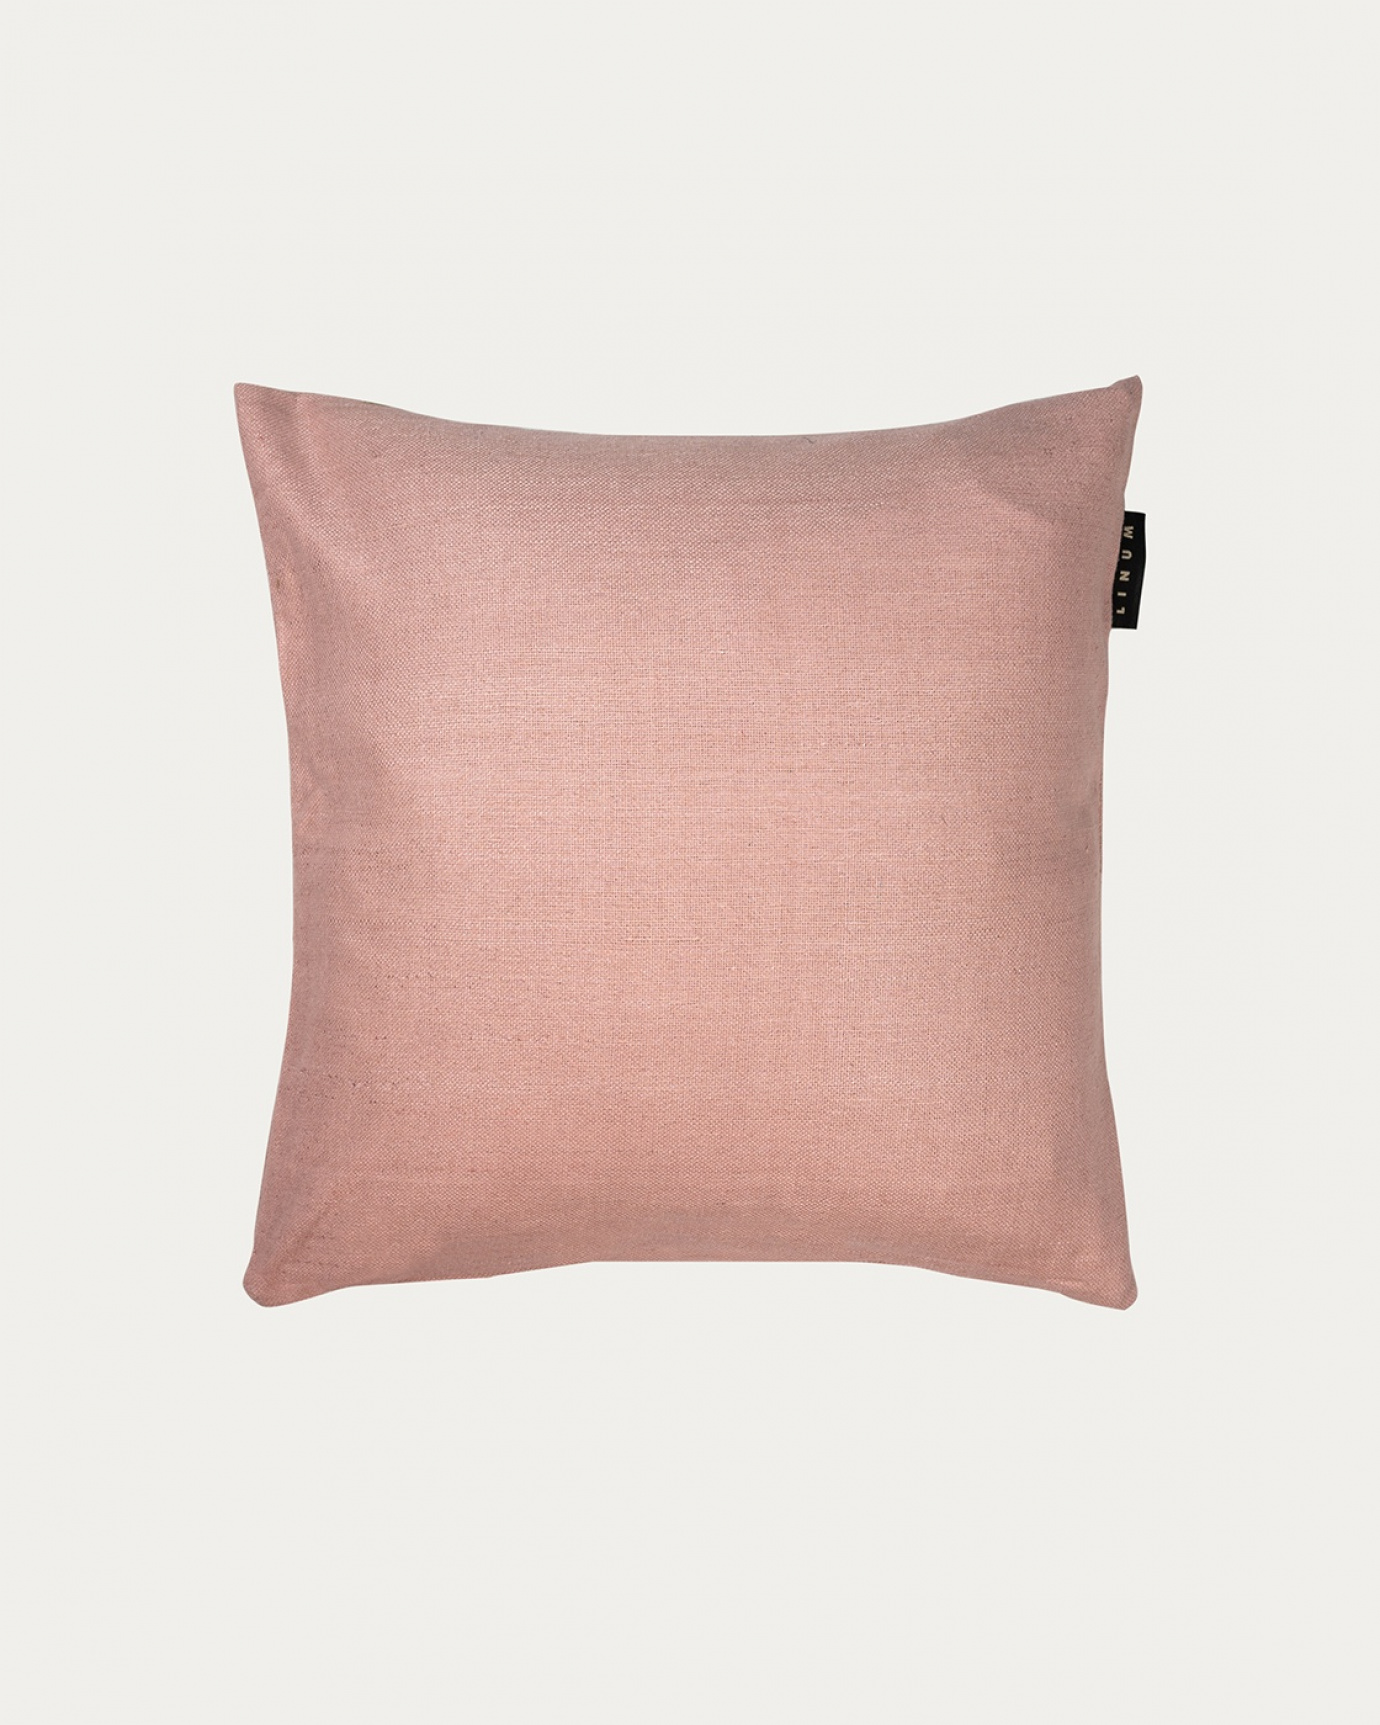 Produktbild dammig rosa SETA kuddfodral av 100% råsiden som ger ett fint lyster från LINUM DESIGN. Storlek 40x40 cm.